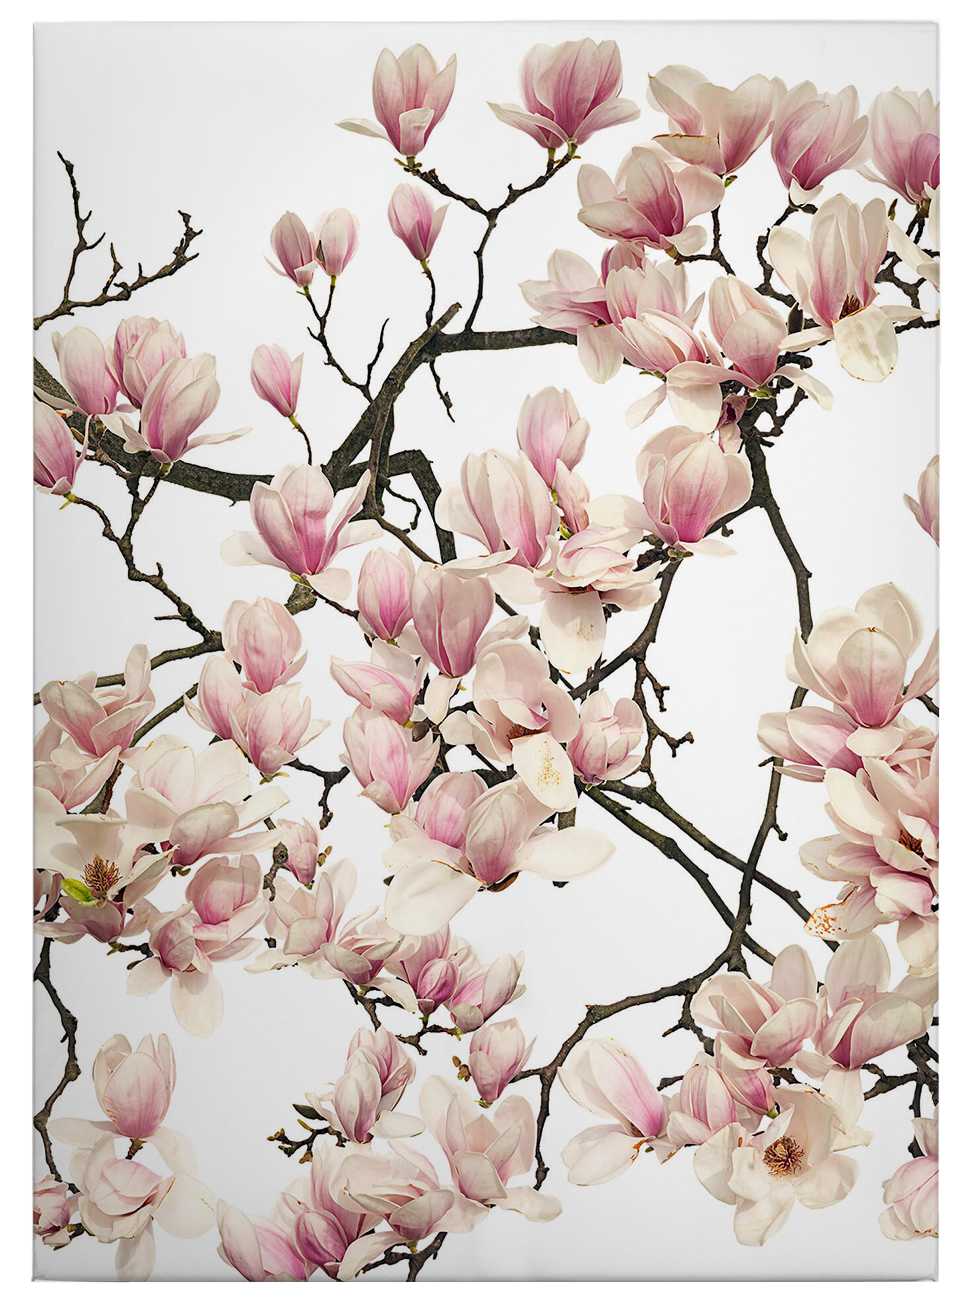             Tableau Kadam sur toile Cerisier en fleurs au printemps - 0,50 m x 0,70 m
        